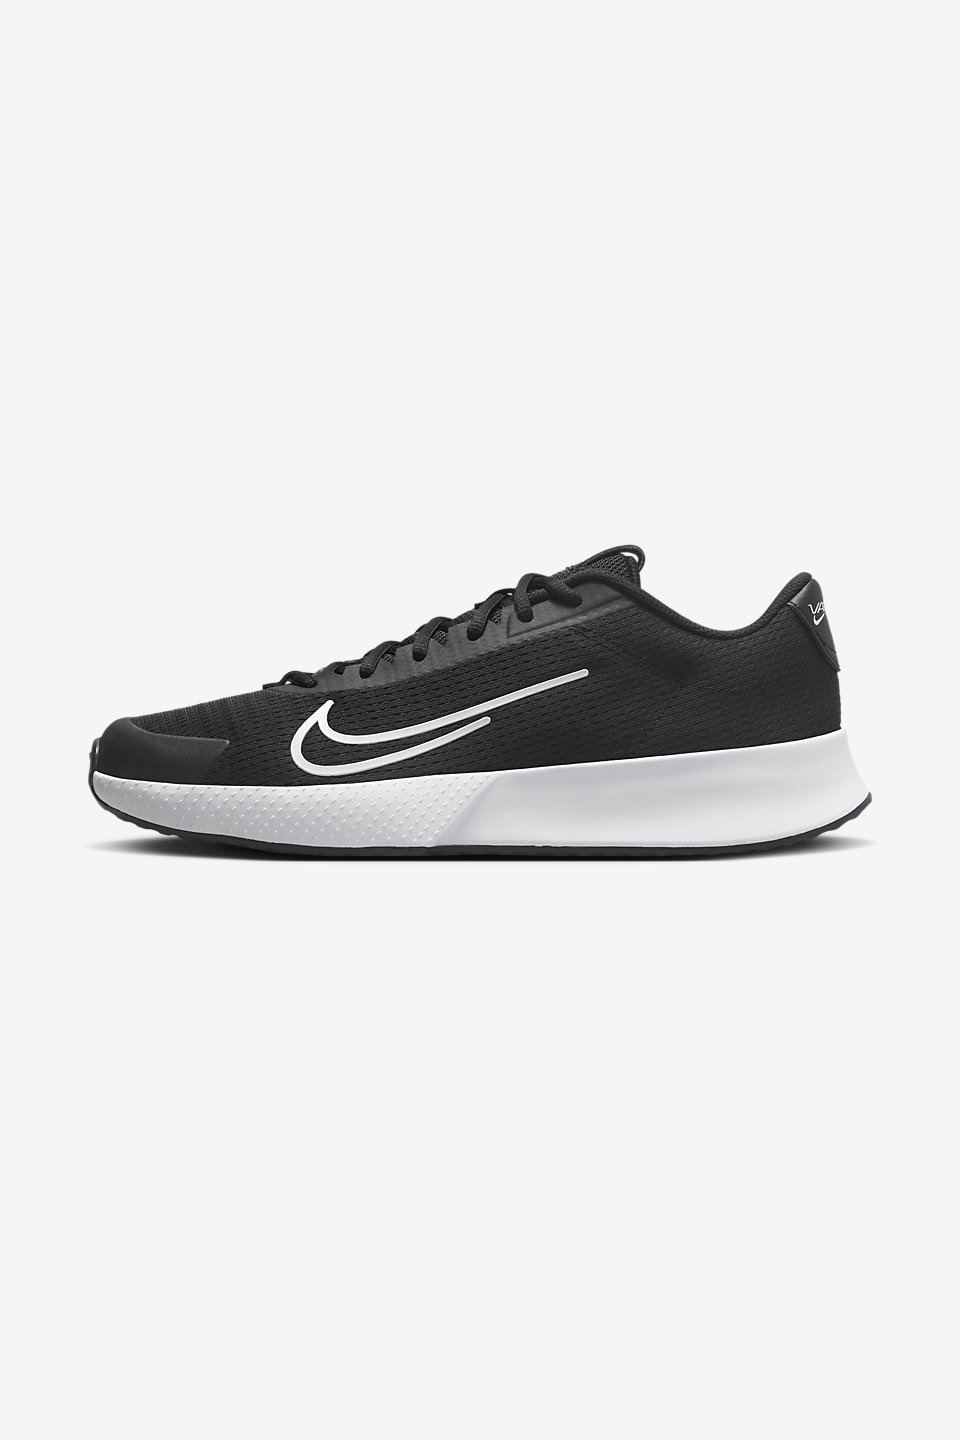 NIKE - NikeCourt Vapor Lite 2 Kadın Sert Kort Tenis Ayakkabısı 